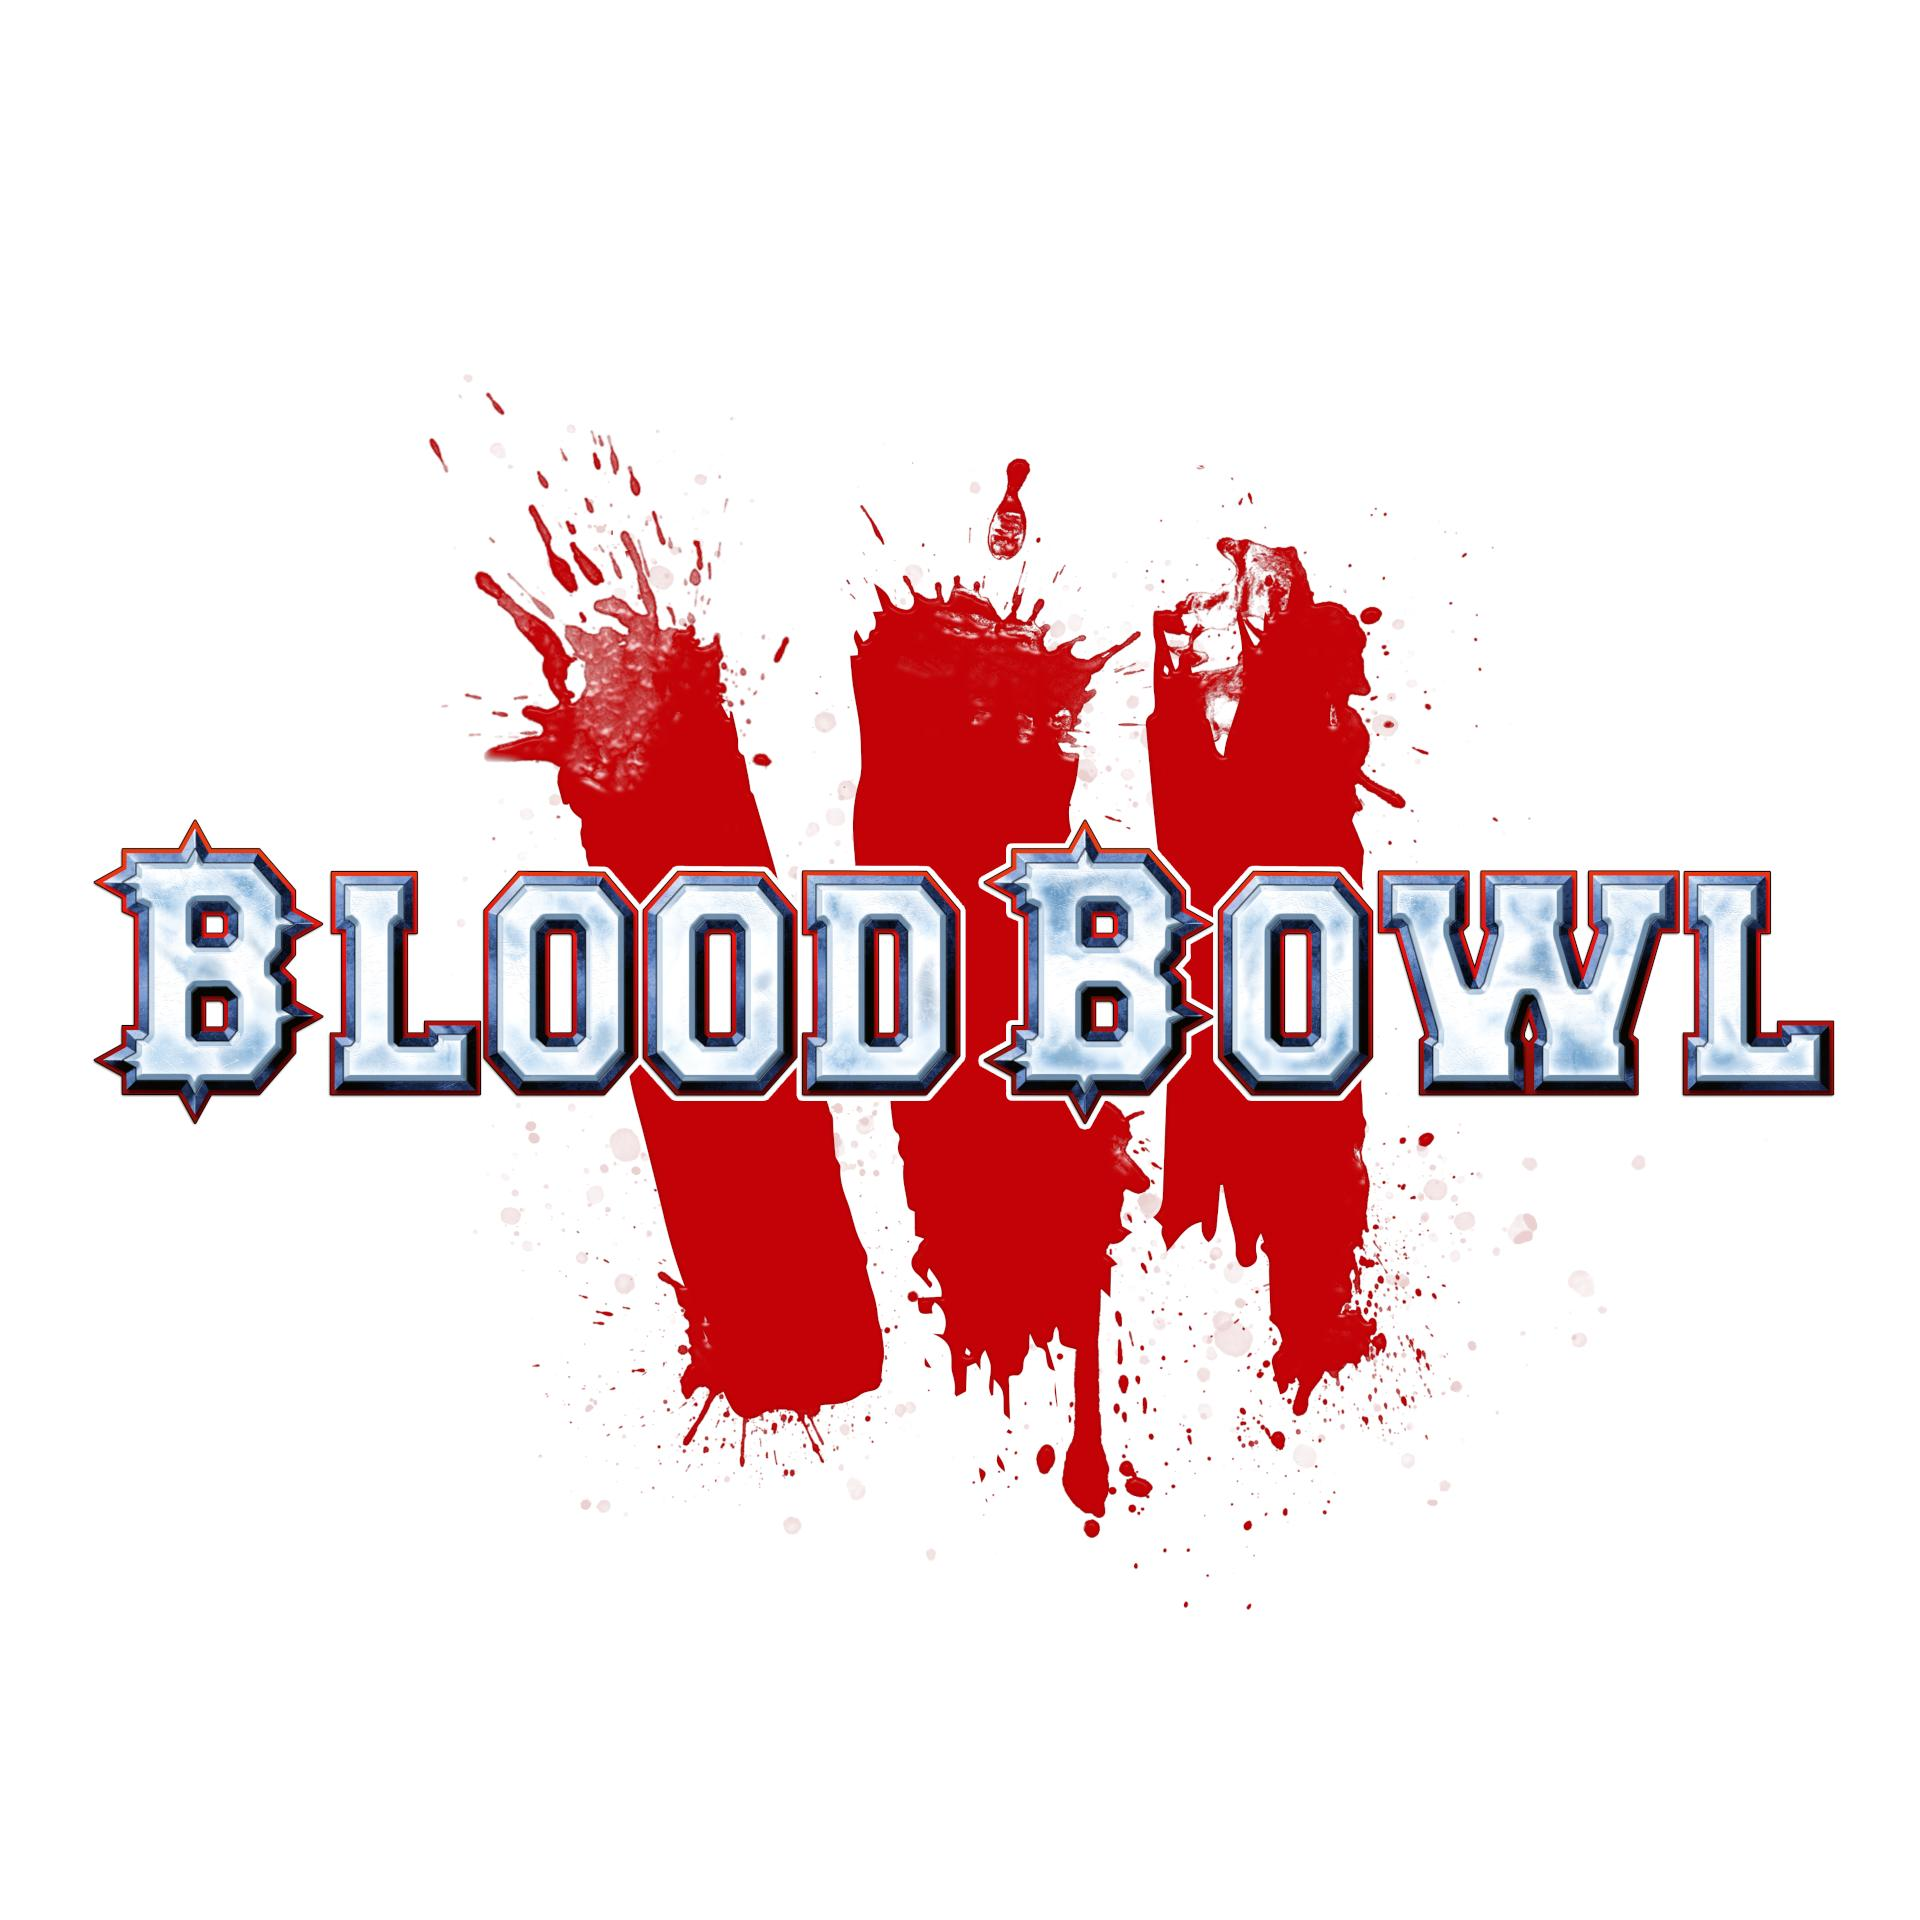 Blood Bowl 3 - [PlayStation - Edition 5] Brutal